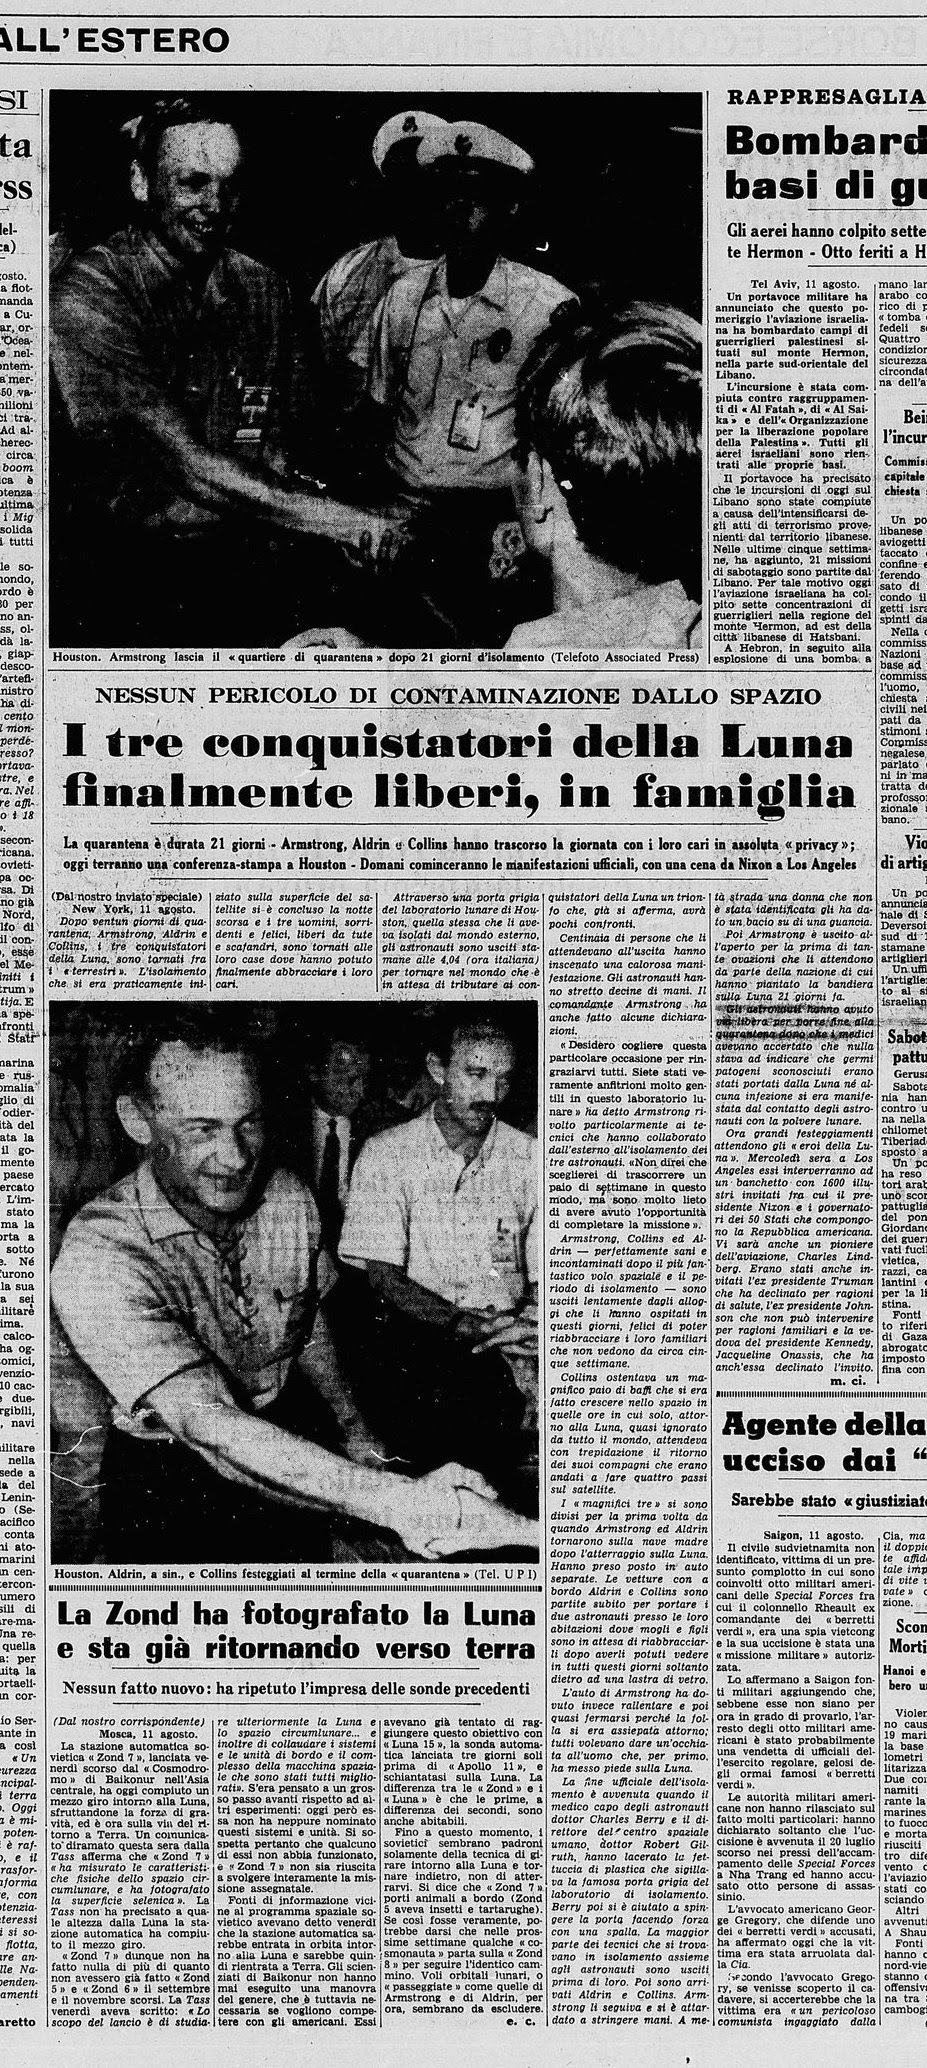 Aug08-1969-Apollo11quarantine-end-in-italian-press3